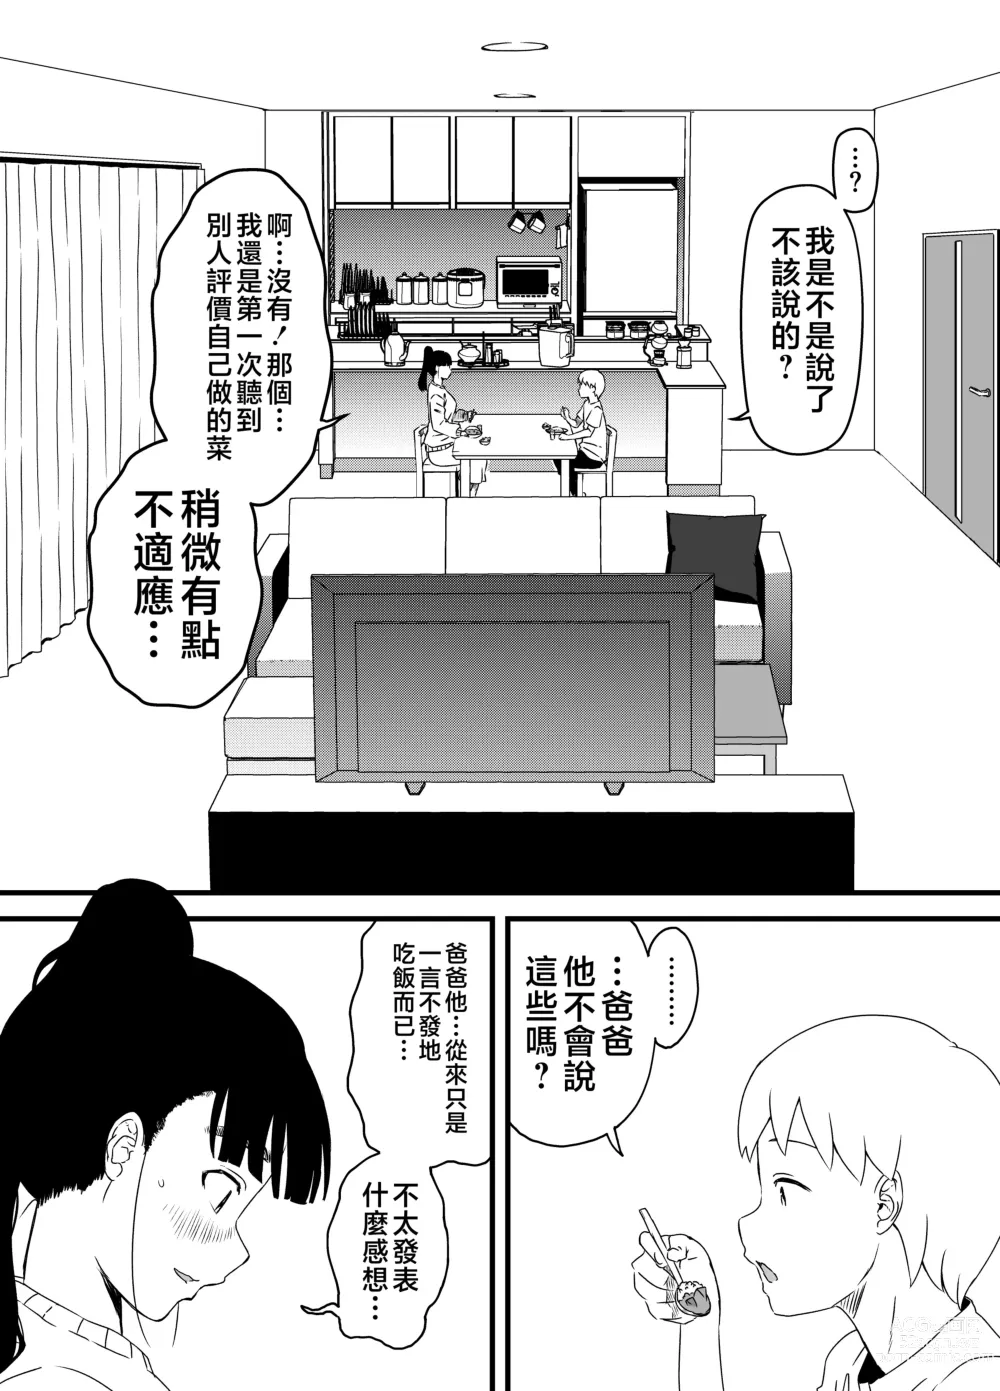 Page 6 of doujinshi Giri no Ane to no 7-kakan Seikatsu - 3